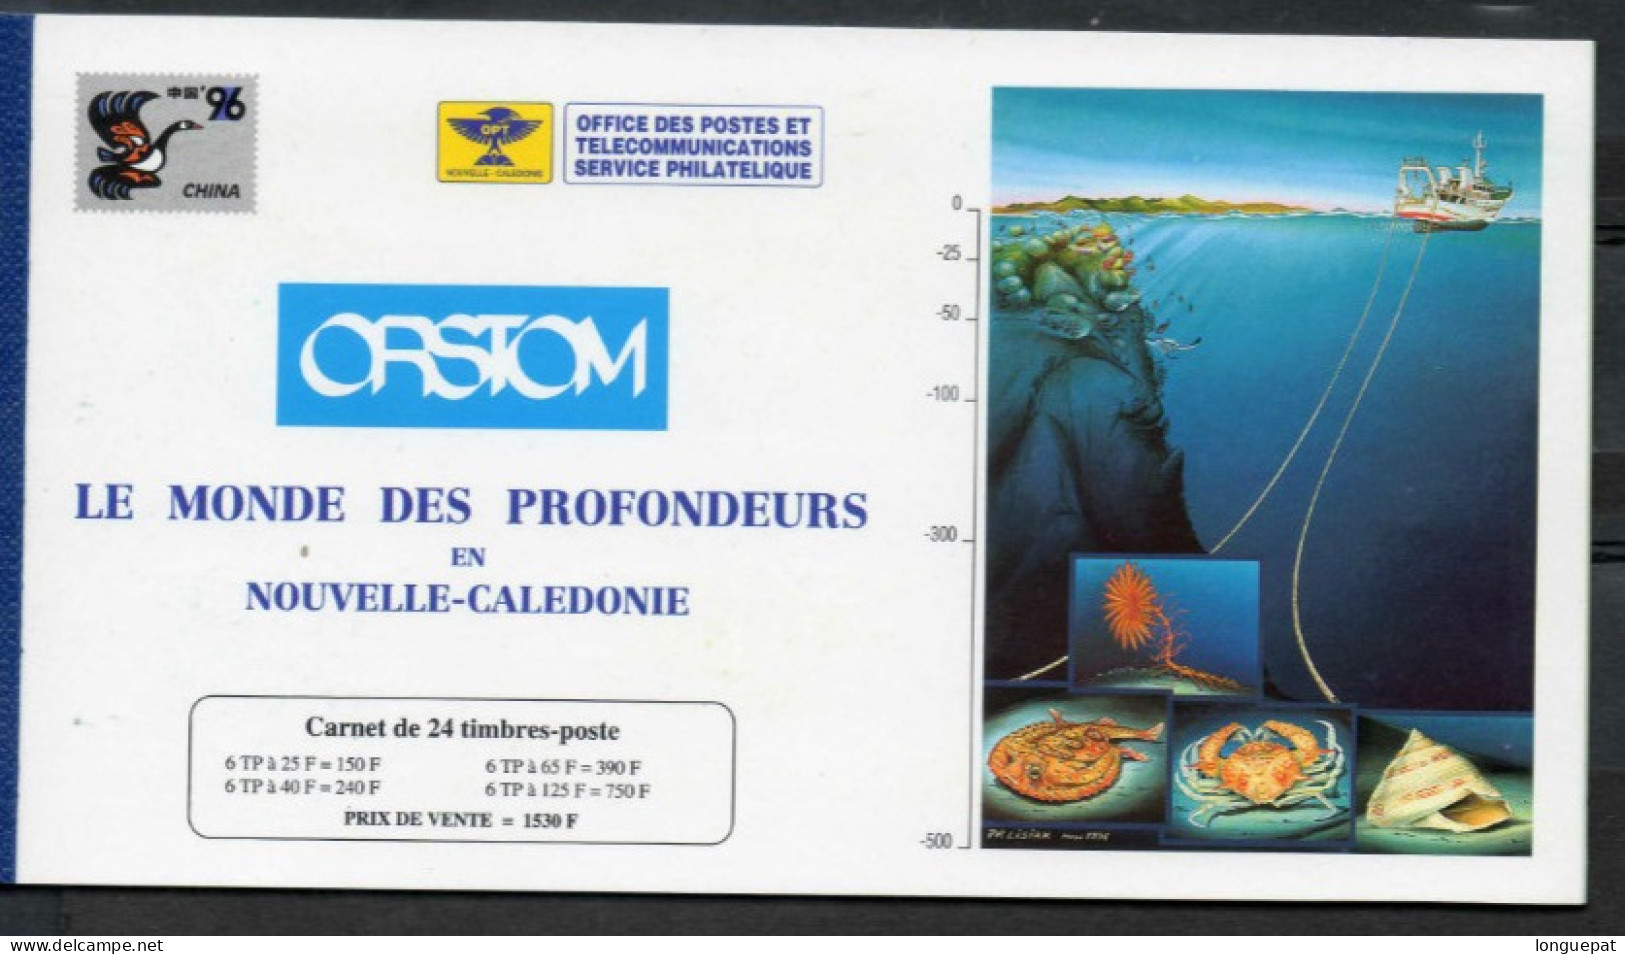 Nelle CALEDONIE : Faune Marine : Poisson, Coquillage, Crabe, Etc - "China 96" Exposition Philatélique - - Markenheftchen